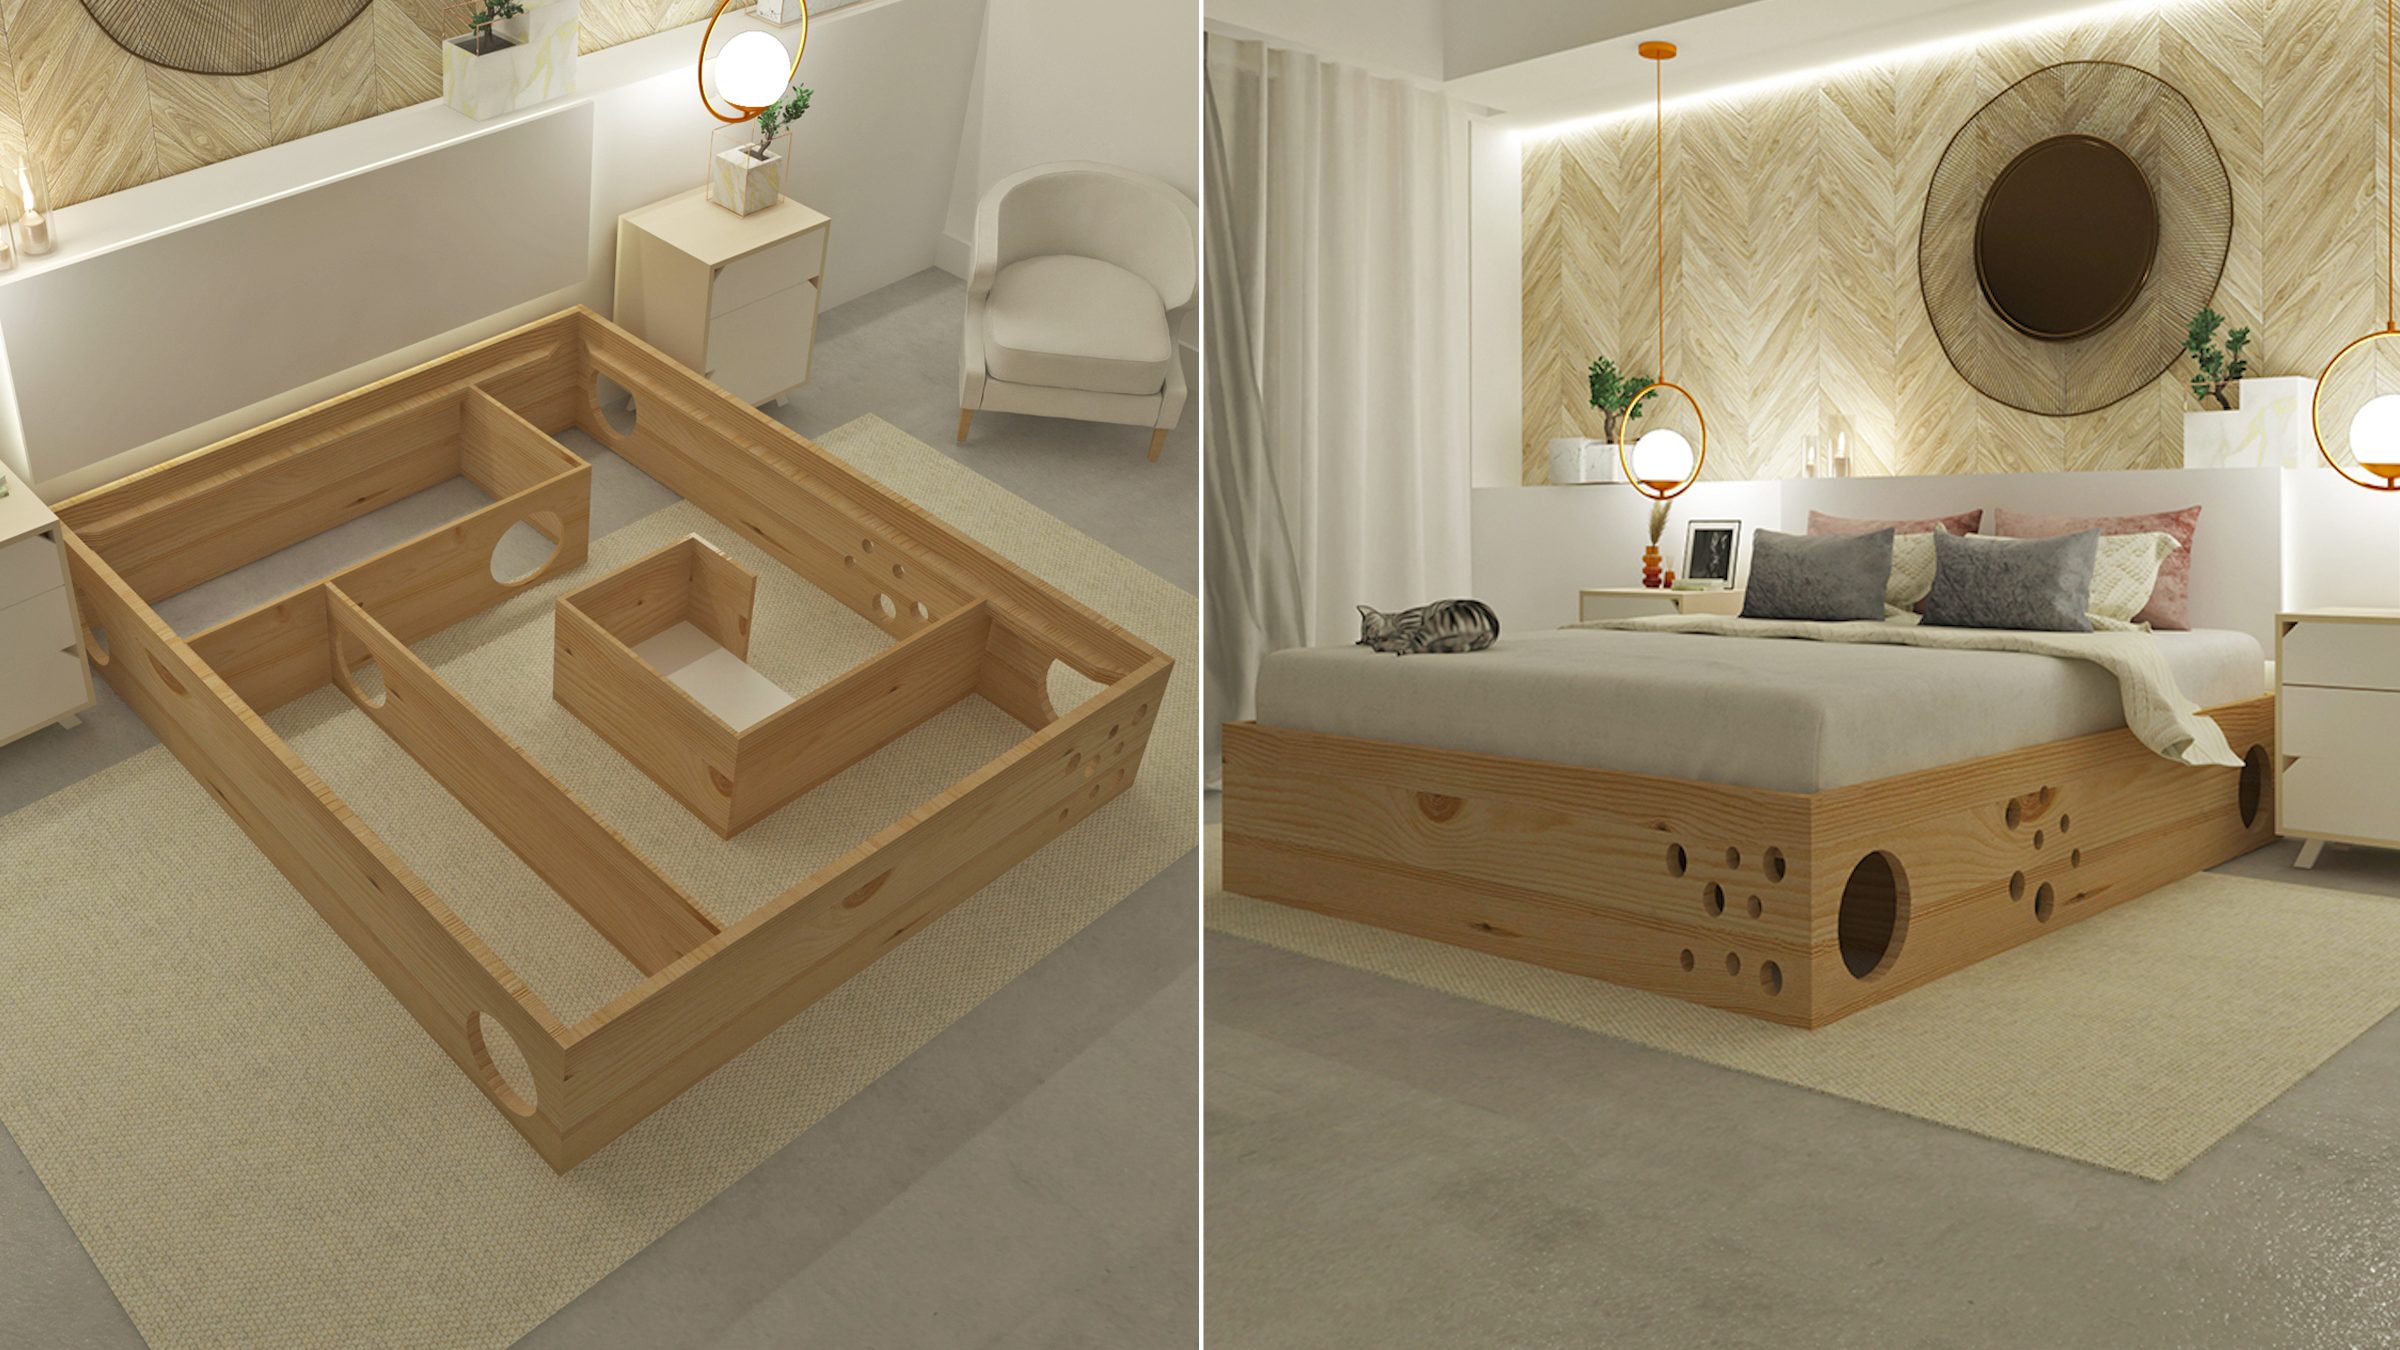 Ce lit intègre un labyrinthe pour votre chat dans sa structure